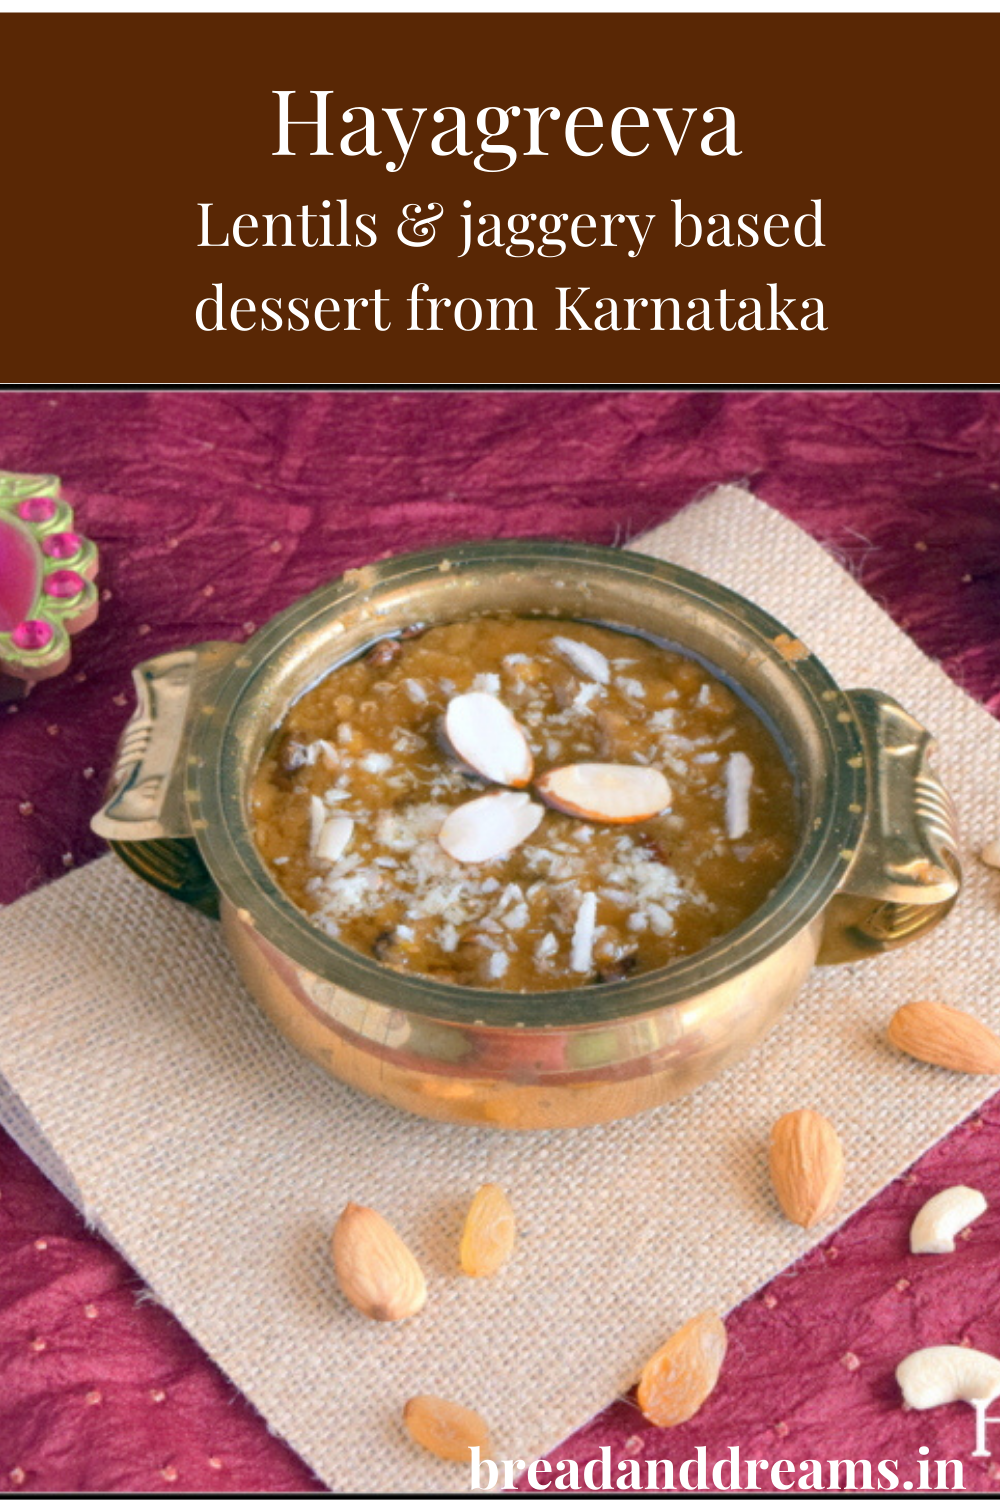 Lentil & jaggery based dessert from Karnataka